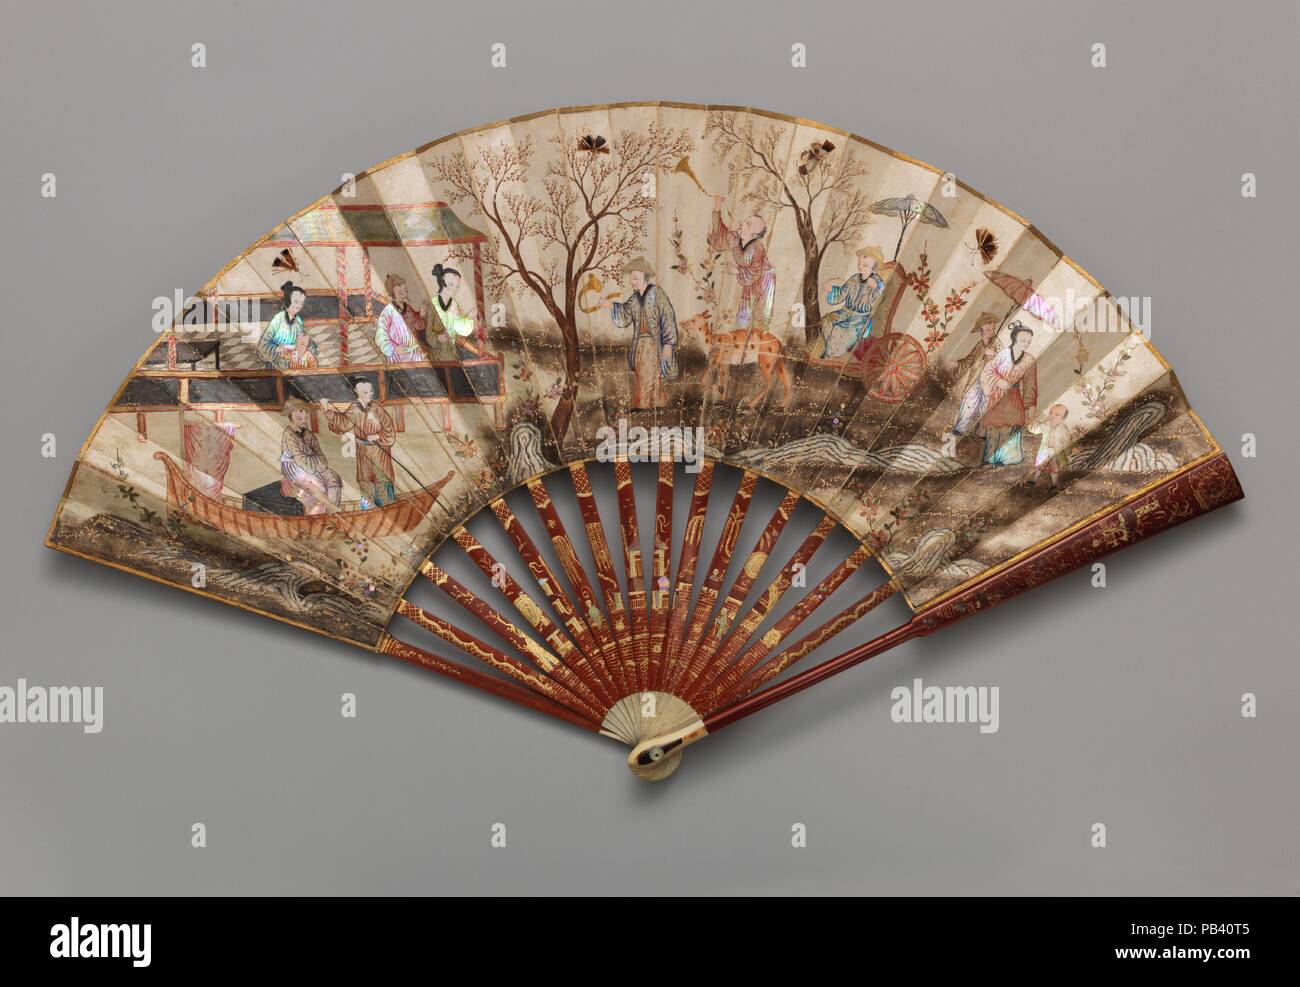 Ventilateur. Culture : le chinois. Dimensions : Ouvert : 11 1/2 x 19 1/4 in. (29,2 x 48,9 cm). Date : milieu du 18ème siècle. Musée : Metropolitan Museum of Art, New York, USA. Banque D'Images